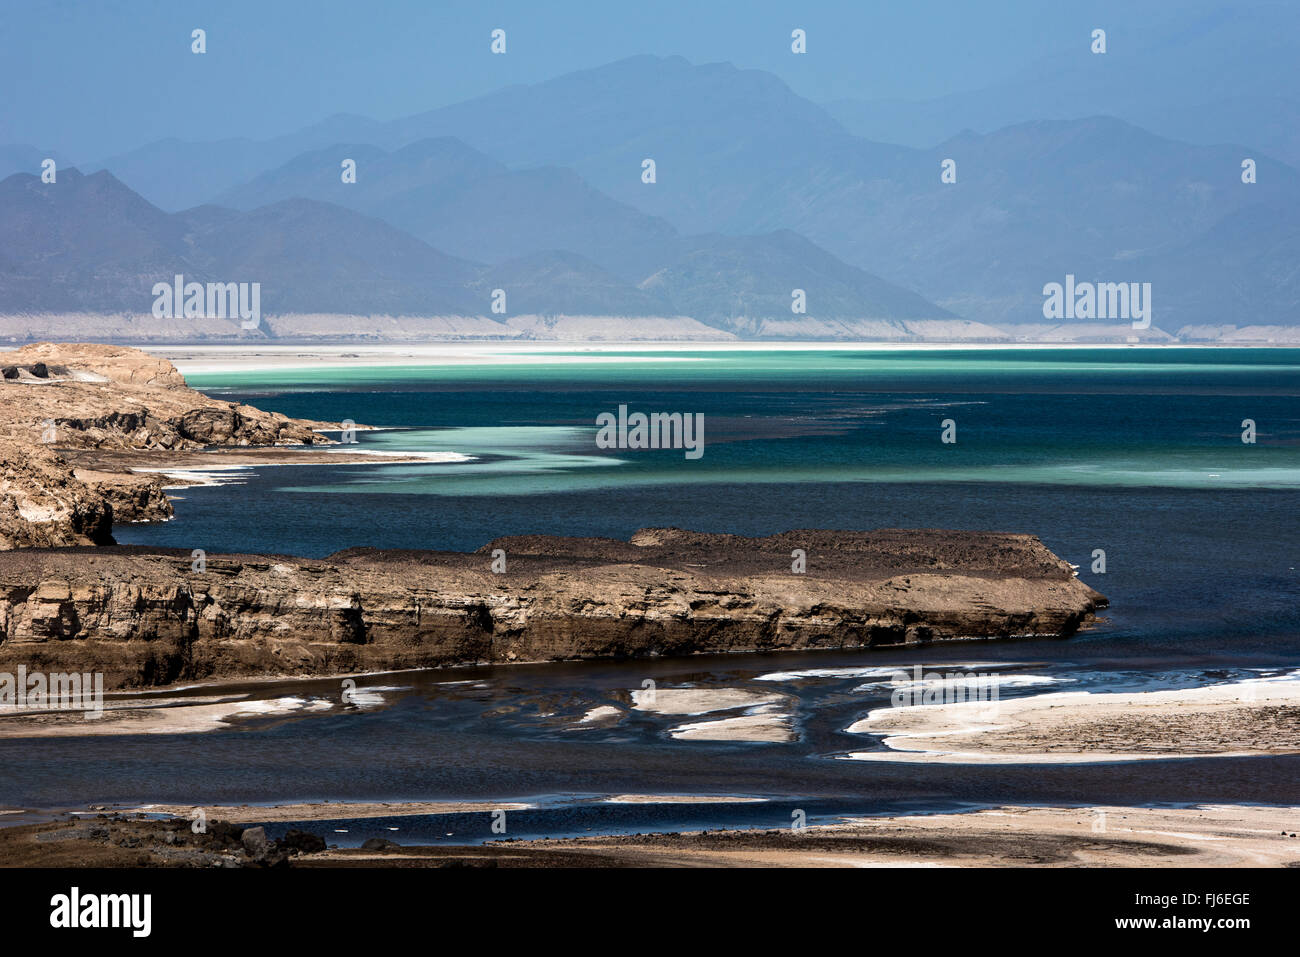 Riserva di sale il Lago Assal, Gibuti, Africa Foto Stock